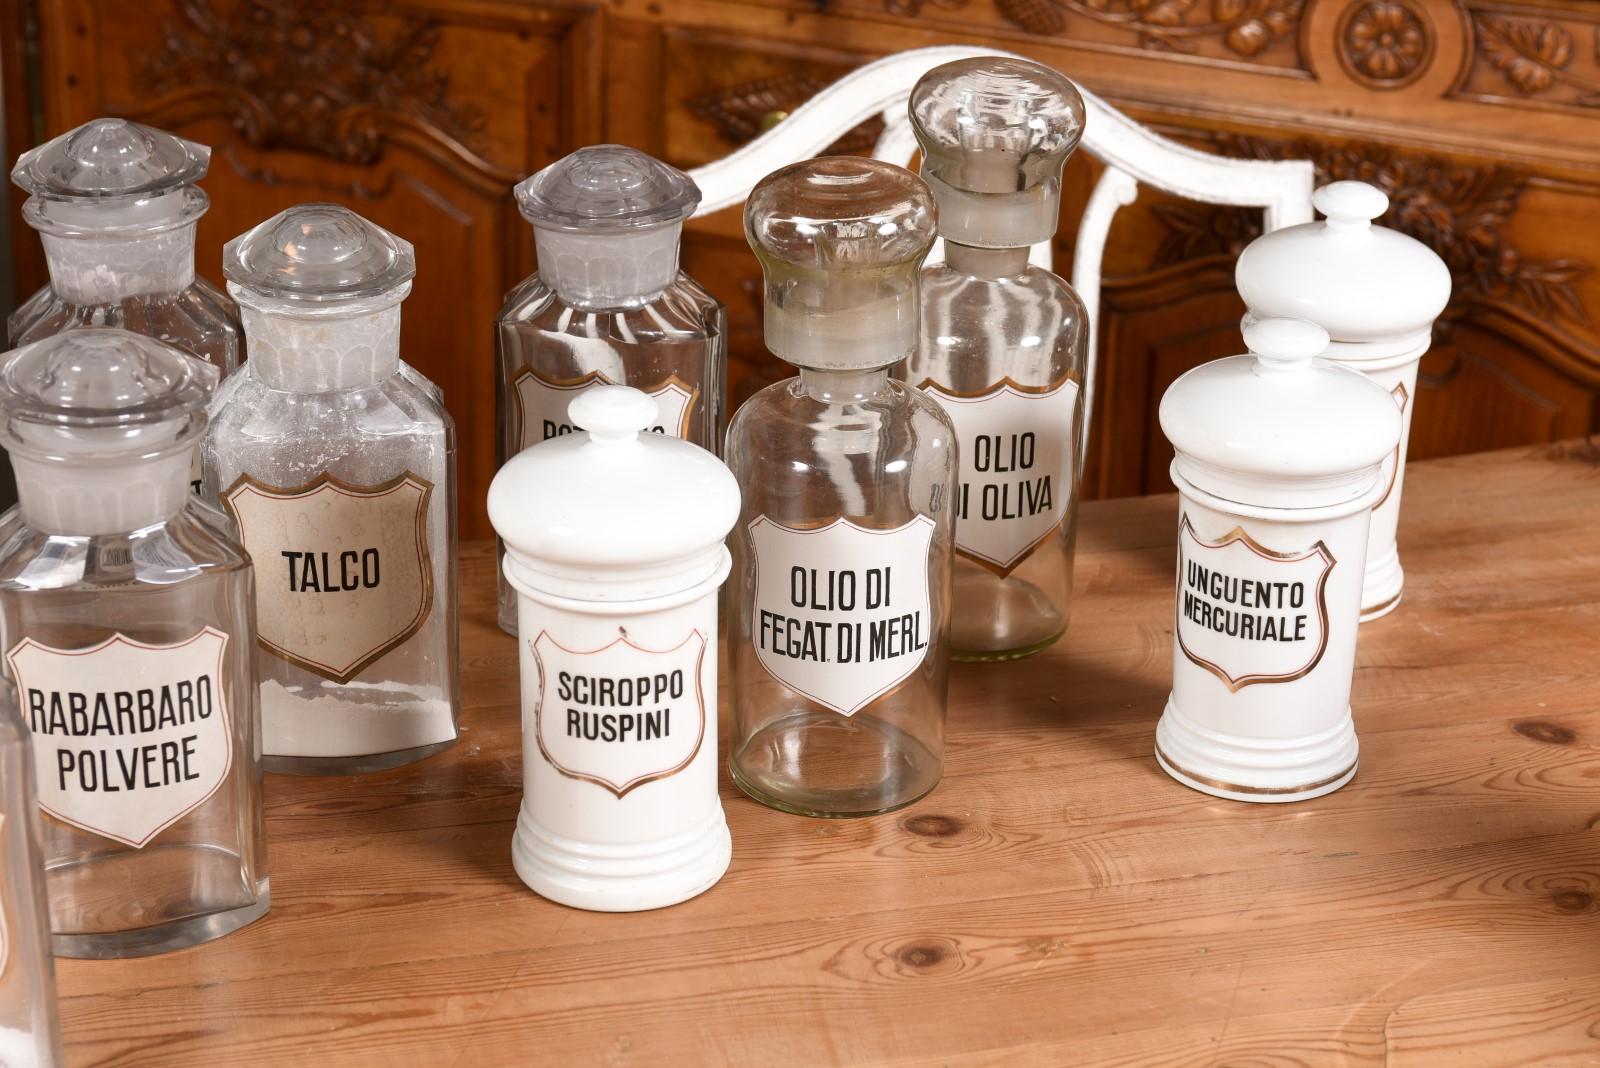 36 Apothekergefäße aus italienischem Glas oder Porzellan im Vintage-Stil mit Etiketten, verkauft pro Stück im Angebot 6